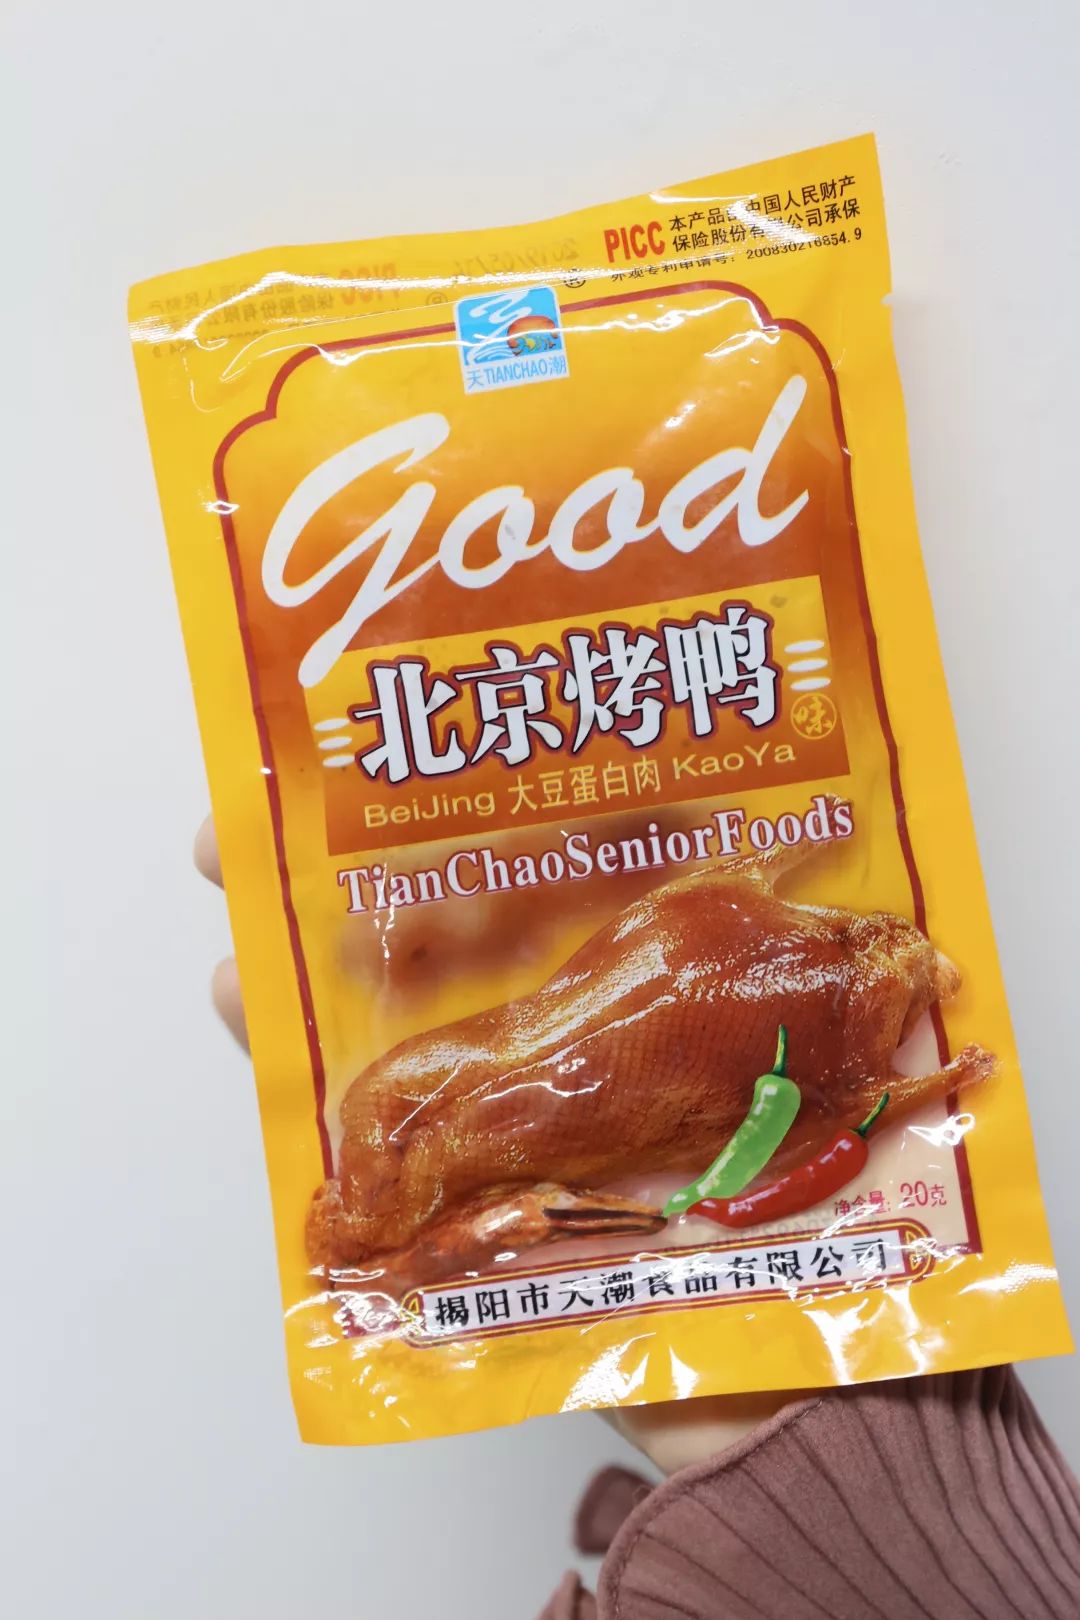 28 小时候没去过北京,对北京烤鸭的印象就来源于这包零食.